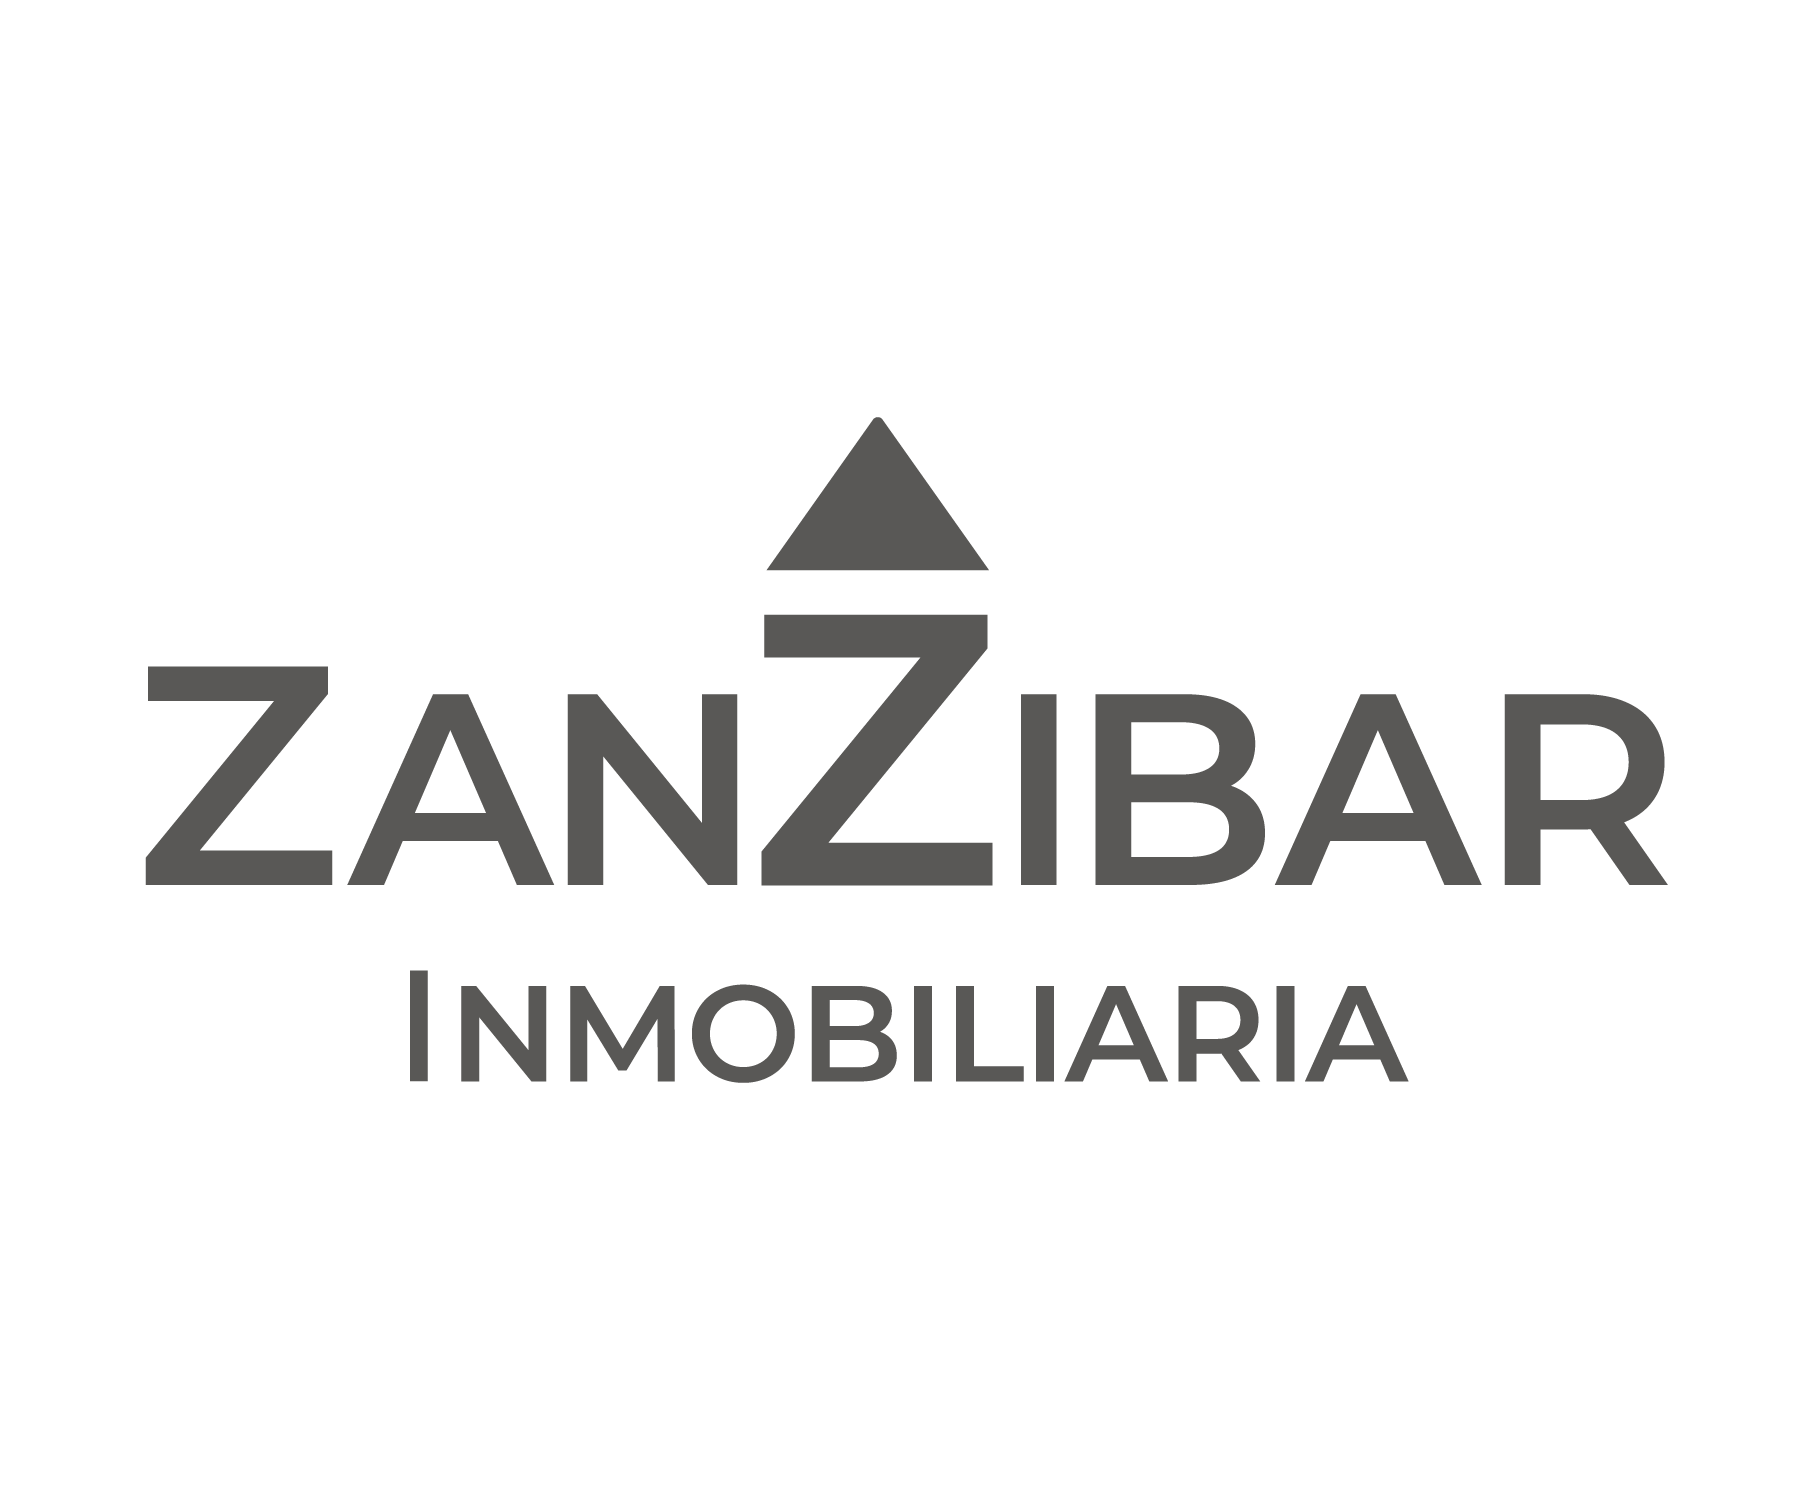 Zanzibar Inmobiliaria